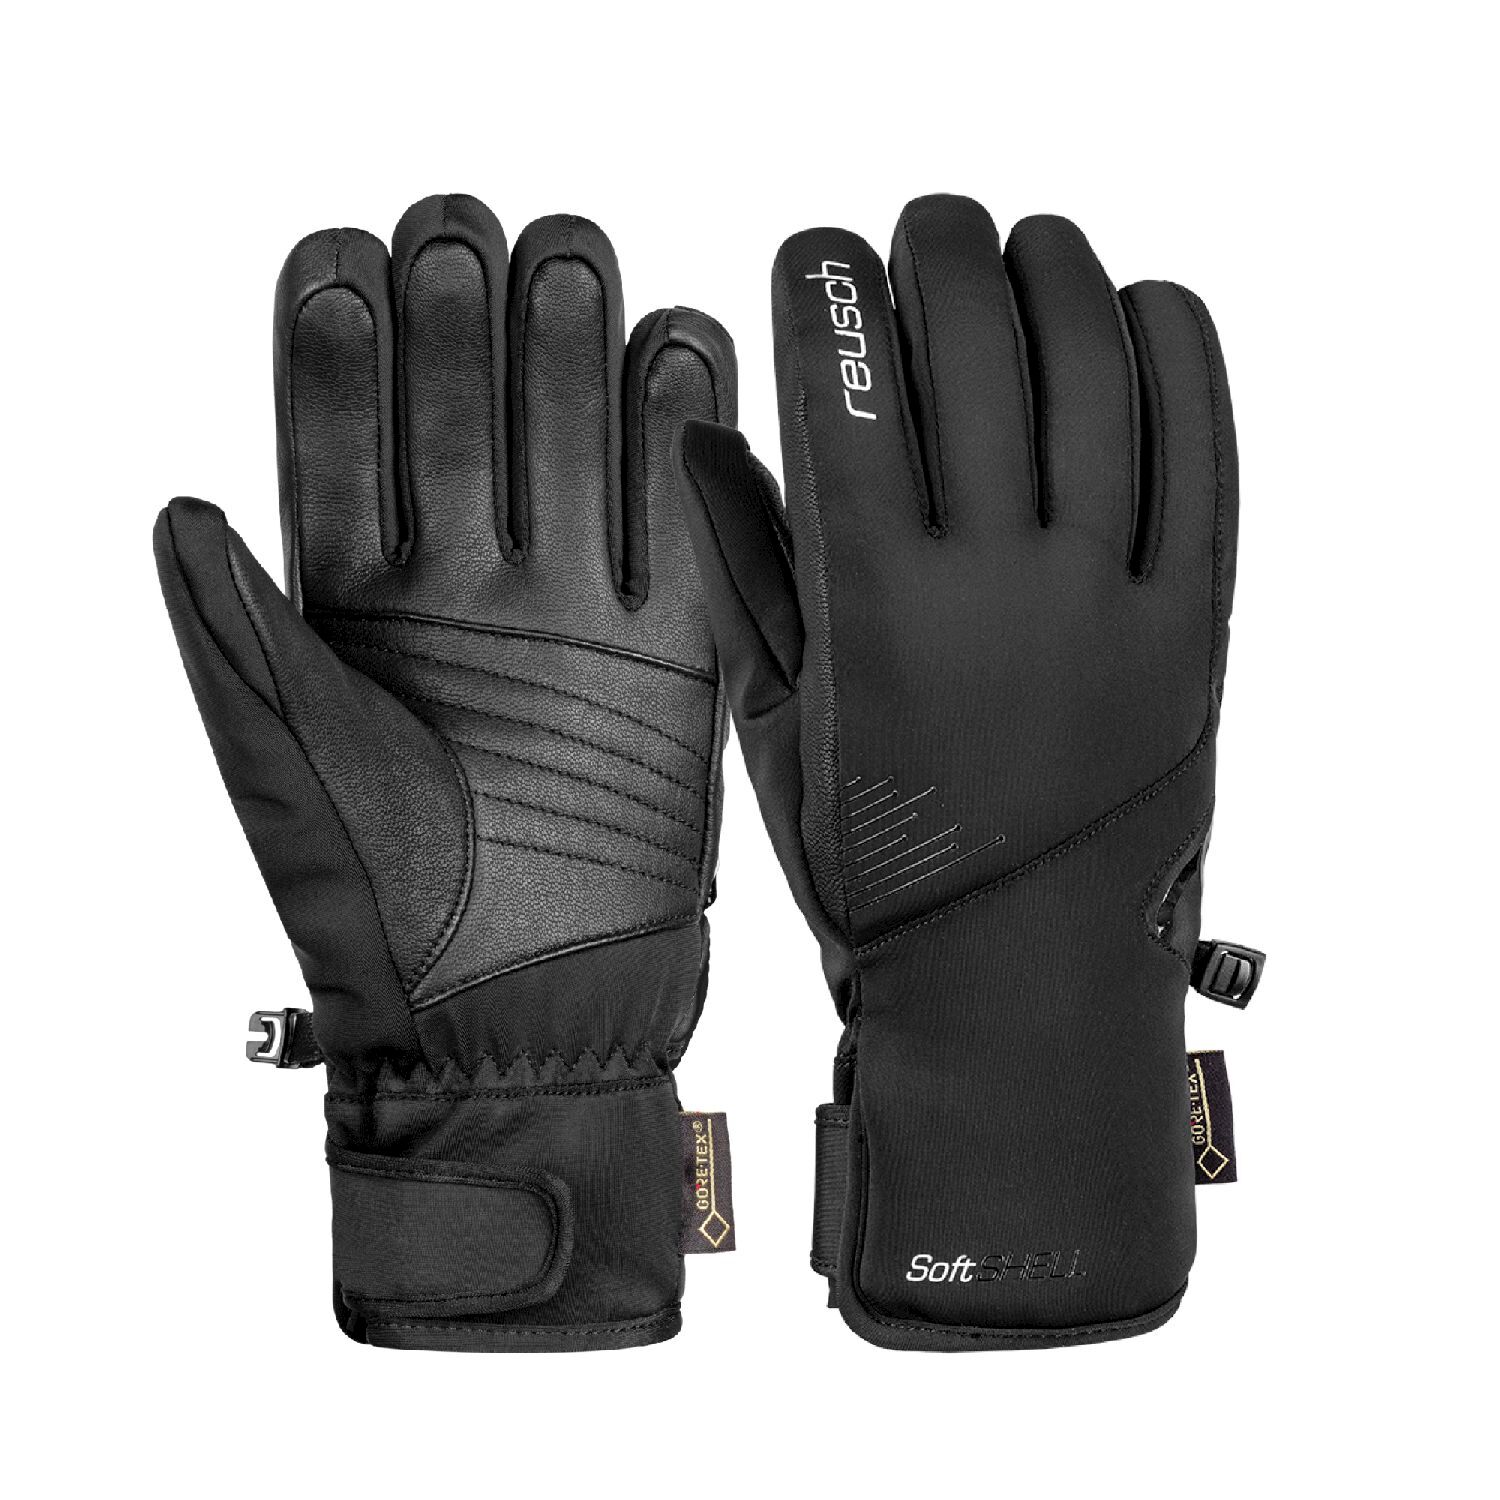 Reusch Pauline GTX - Ski gloves - Women's